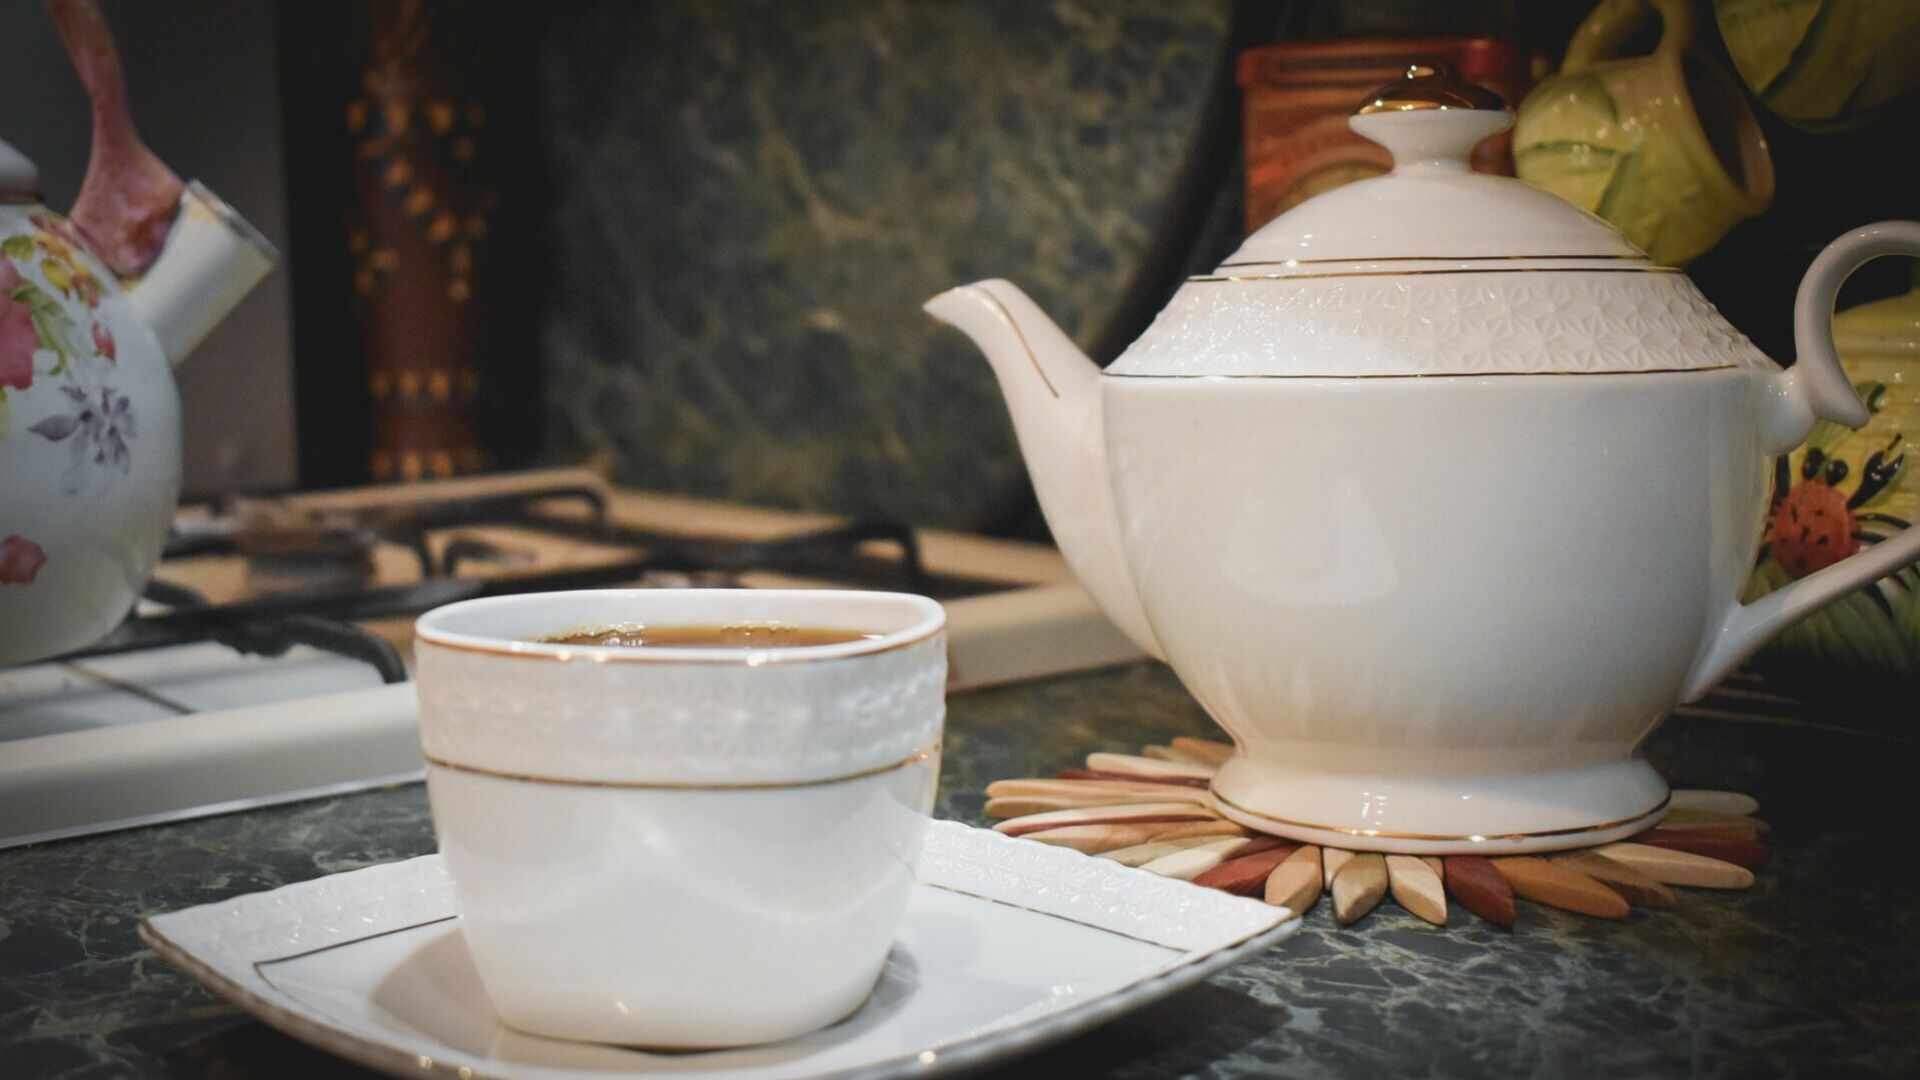 Роспотребнадзор посоветовал оренбуржцам полезный согревающий напиток — масала чай